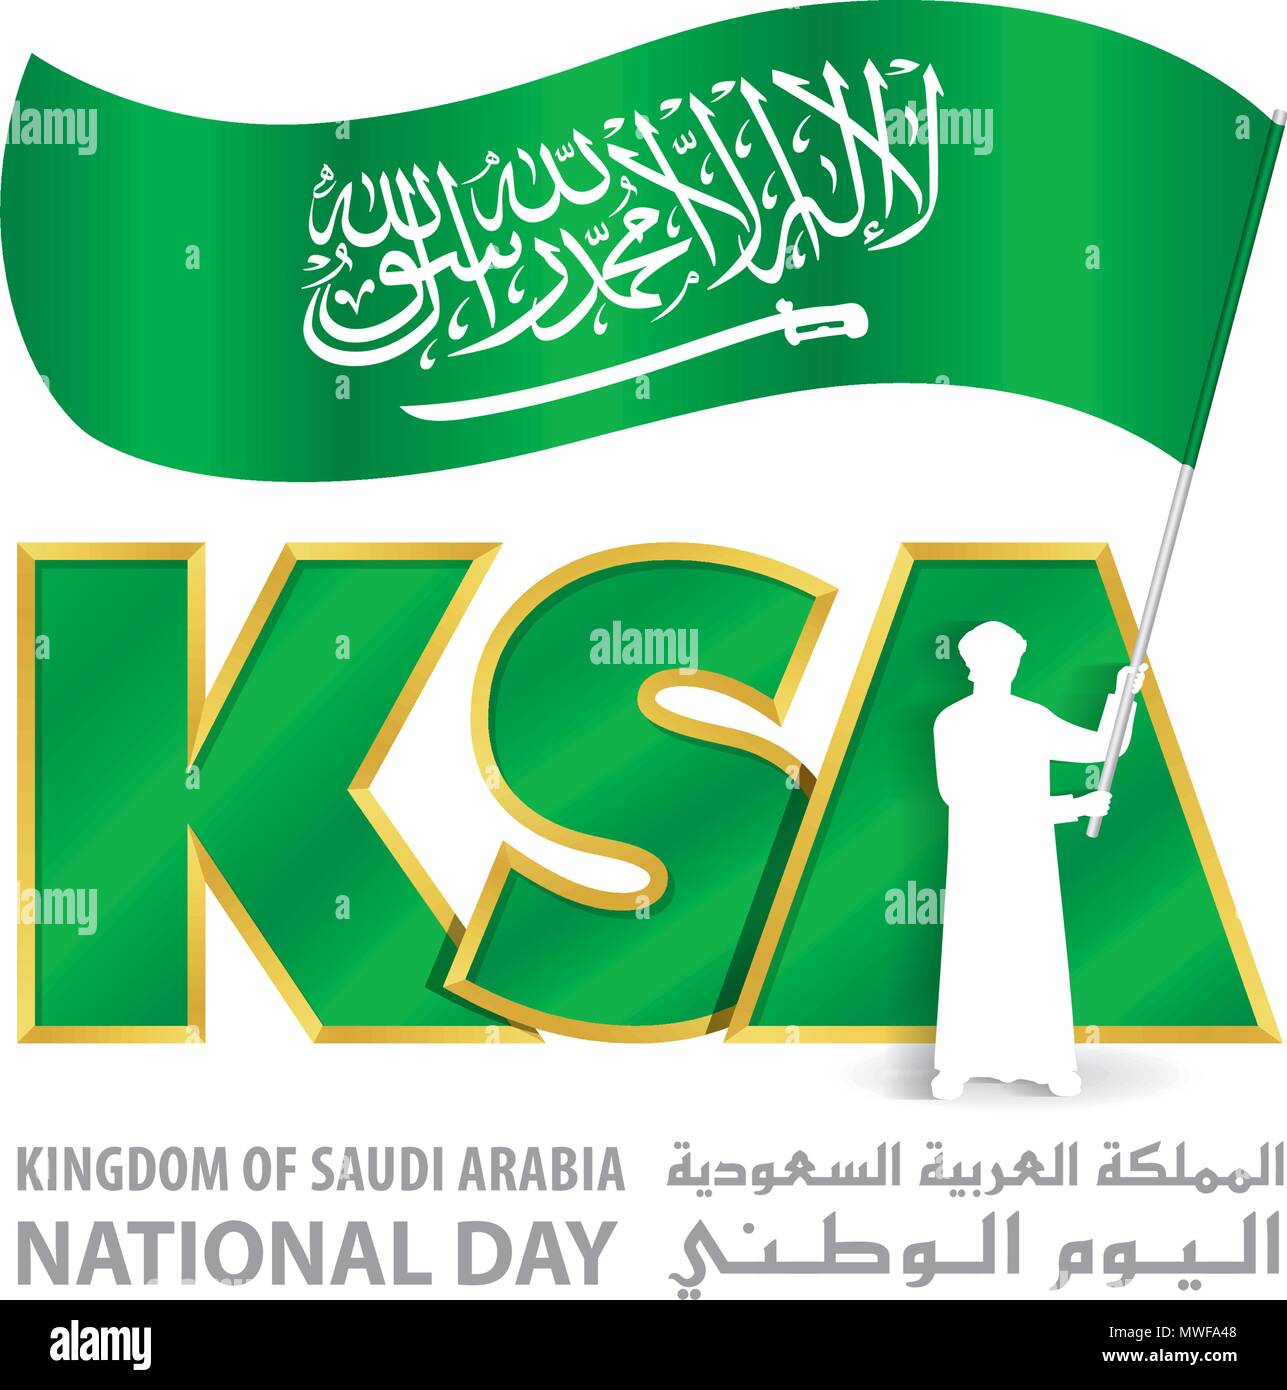 KSA Día Nacional Logo con jóvenes Arabia mantenga Bandera, una inscripción en inglés y en árabe "Reino de Arabia Saudita el Día Nacional", ilustración vectorial Ilustración del Vector